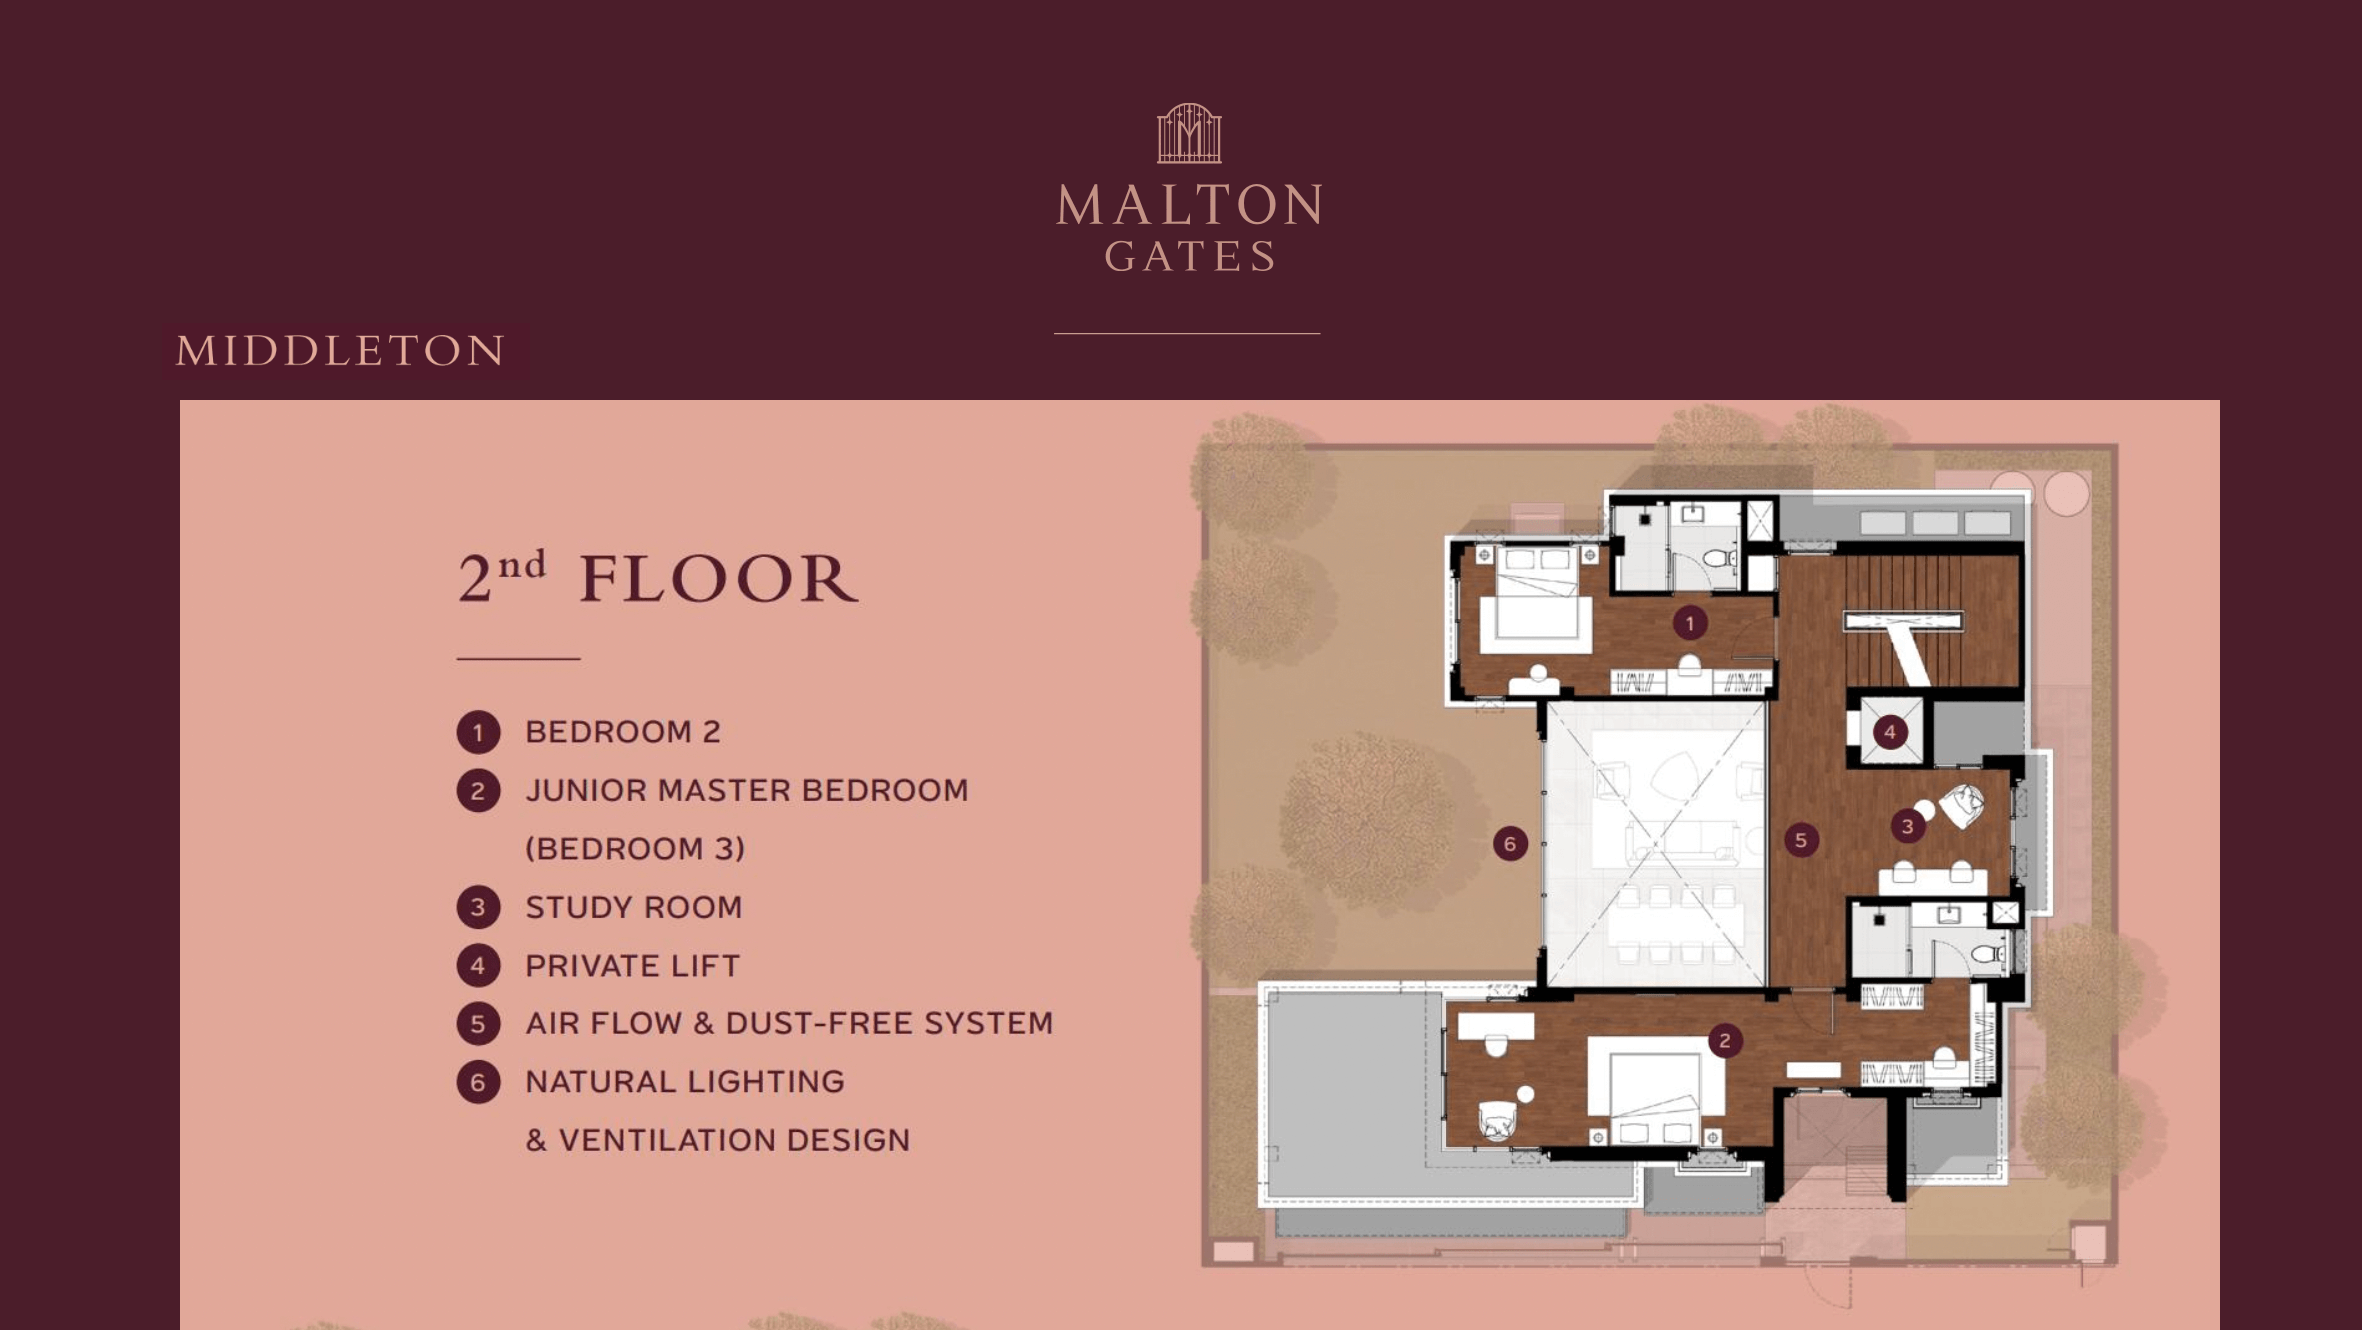 Malton Gates Middleton Floor Plan 2